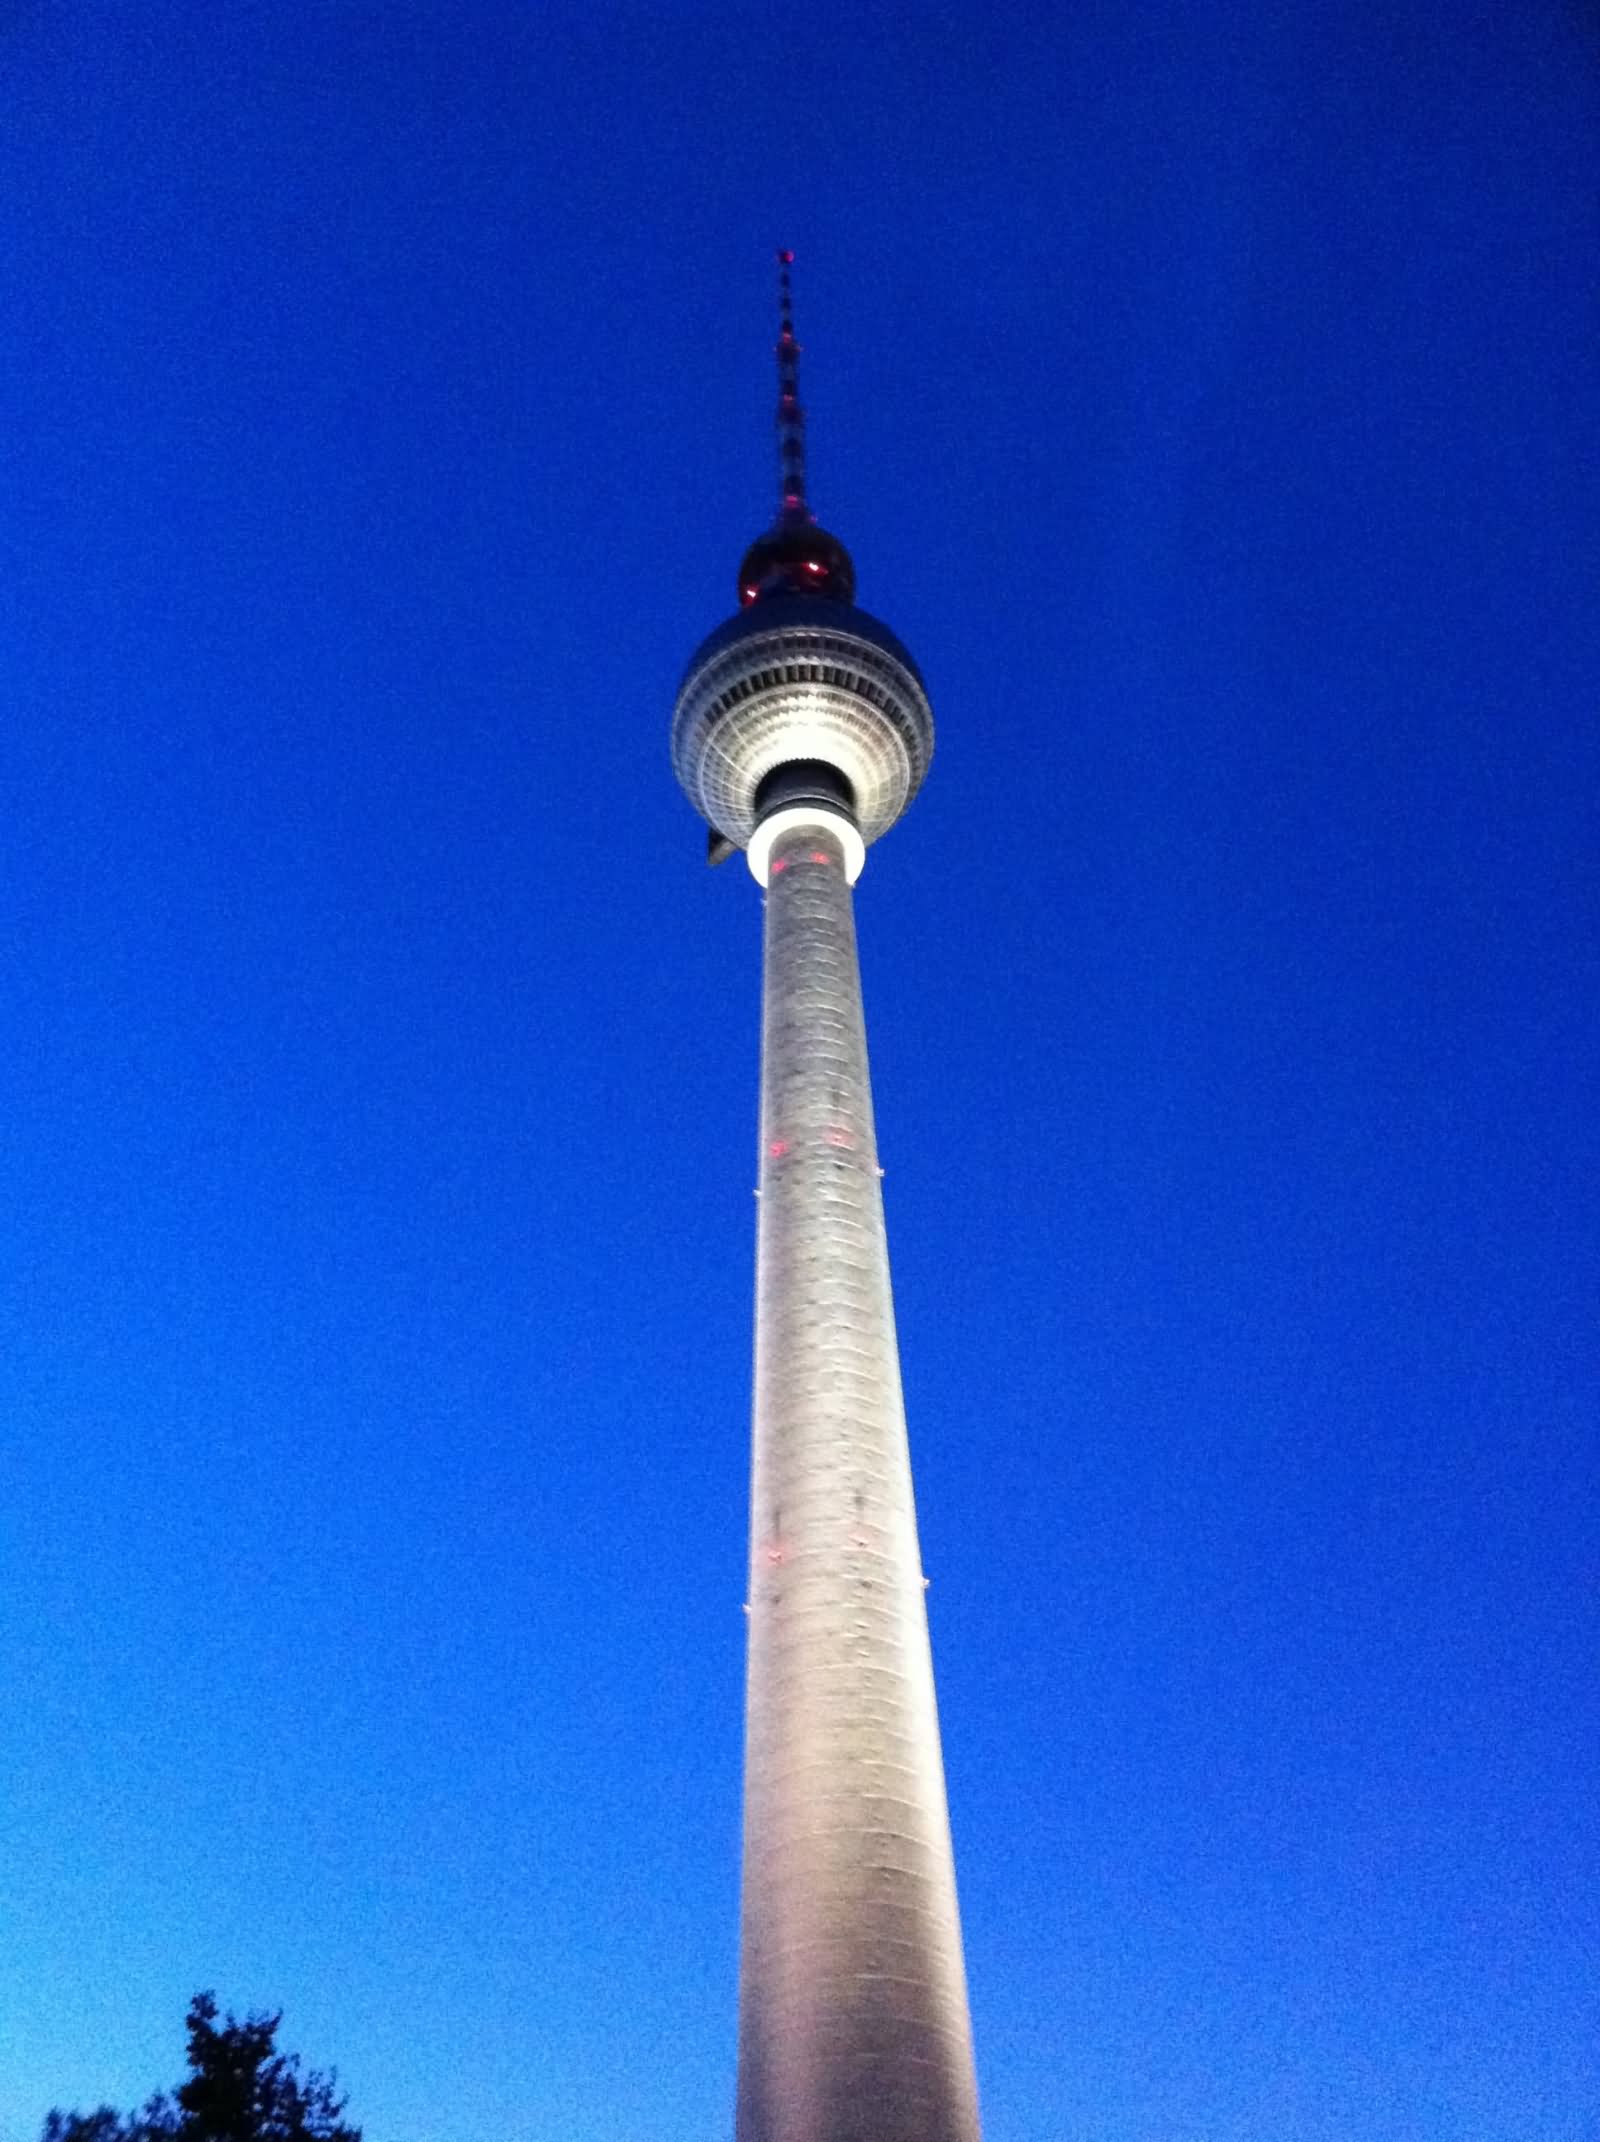 Fernsehturm Tv Tower In Berlin, Germany